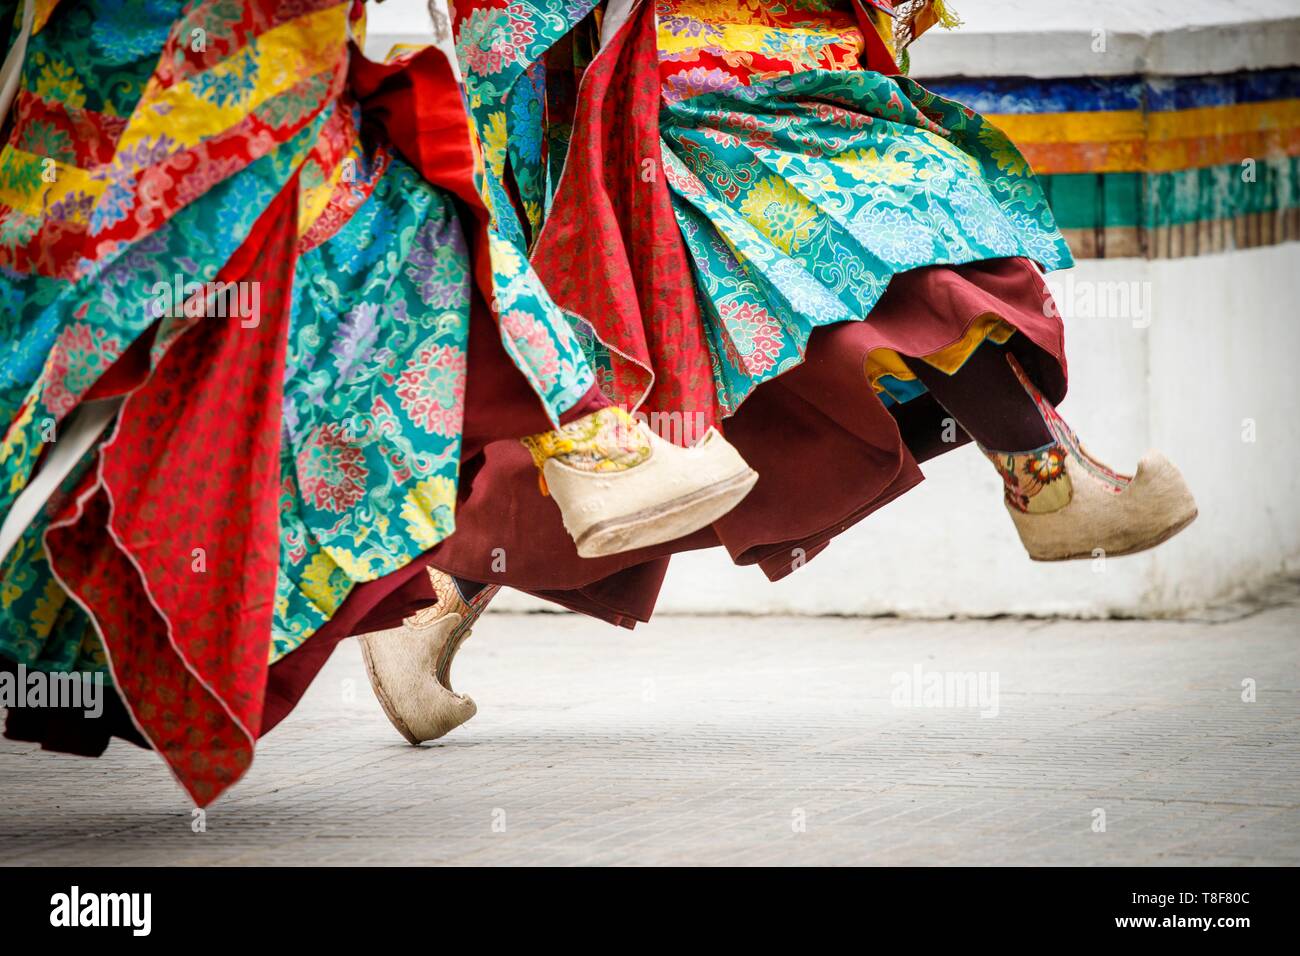 Indien, Jammu und Kaschmir, Himalaya, Ladakh, Indus Valley, Leh, Ladakh Festival, Gompa Soma buddhistischer Tempel (Chokhang), ein Mönch in einem bunten Kostüm führt rituelle Tänze im Innenhof des Tempels Stockfoto